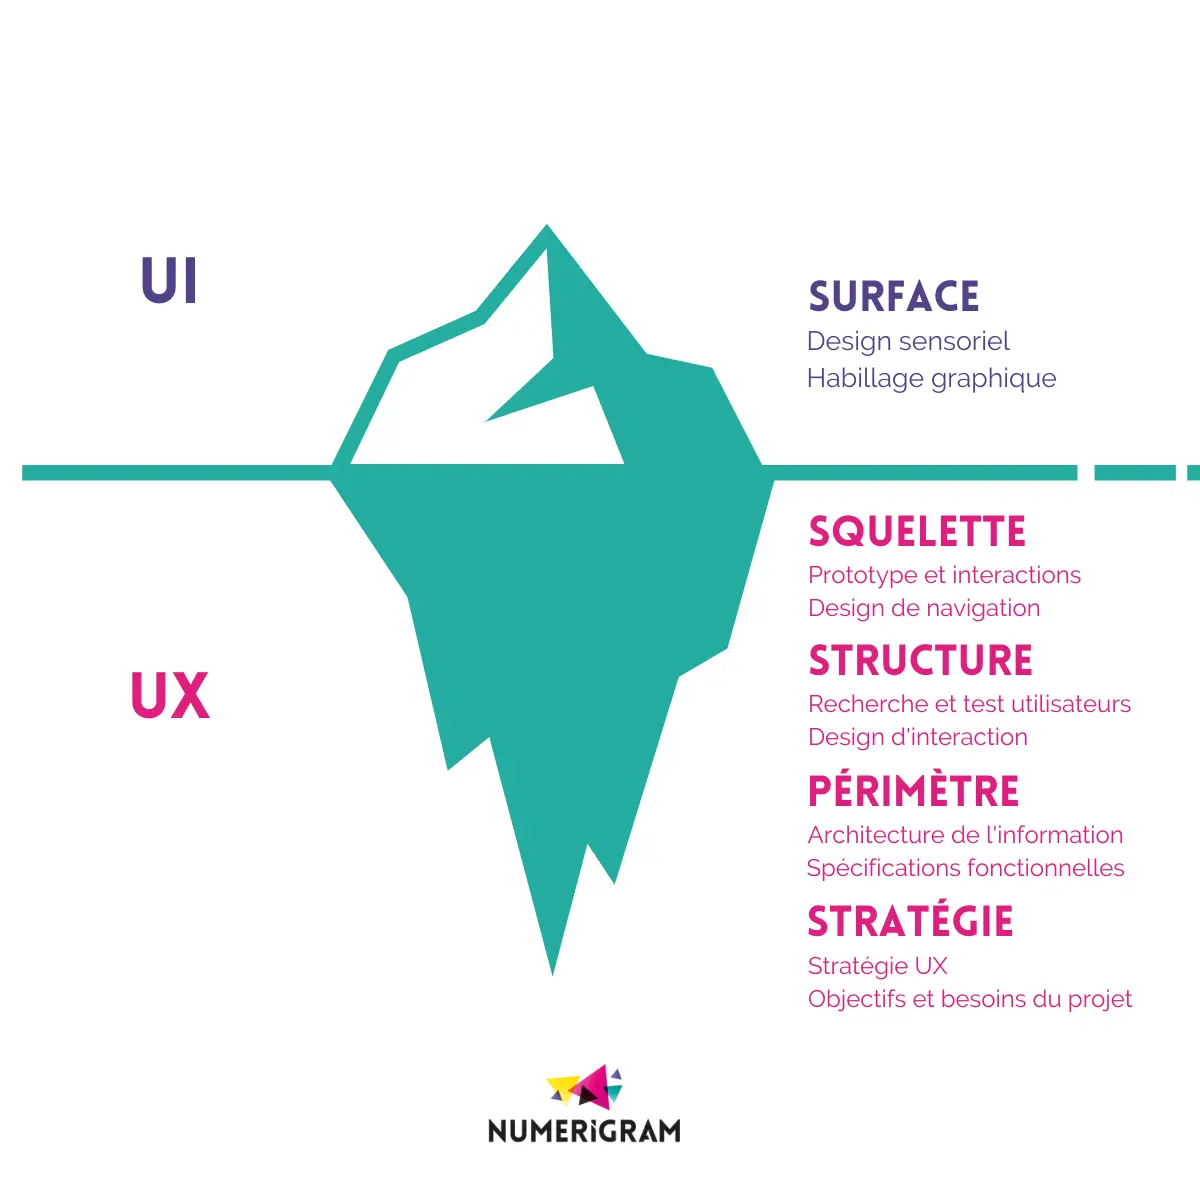 Graphique illustrant un iceberg. La petite partie visible au-dessus de l'eau représente l'interface utilisateur (UI), montrant des éléments tels que la typographie, les couleurs et les boutons. La grande partie cachée sous l'eau représente l'expérience utilisateur (UX) et contient des éléments tels que la recherche utilisateur, la conception de l'architecture de l'information, la stratégie de contenu, etc. Ceci souligne l'idée que l'UX englobe beaucoup plus que ce que l'on voit en surface.